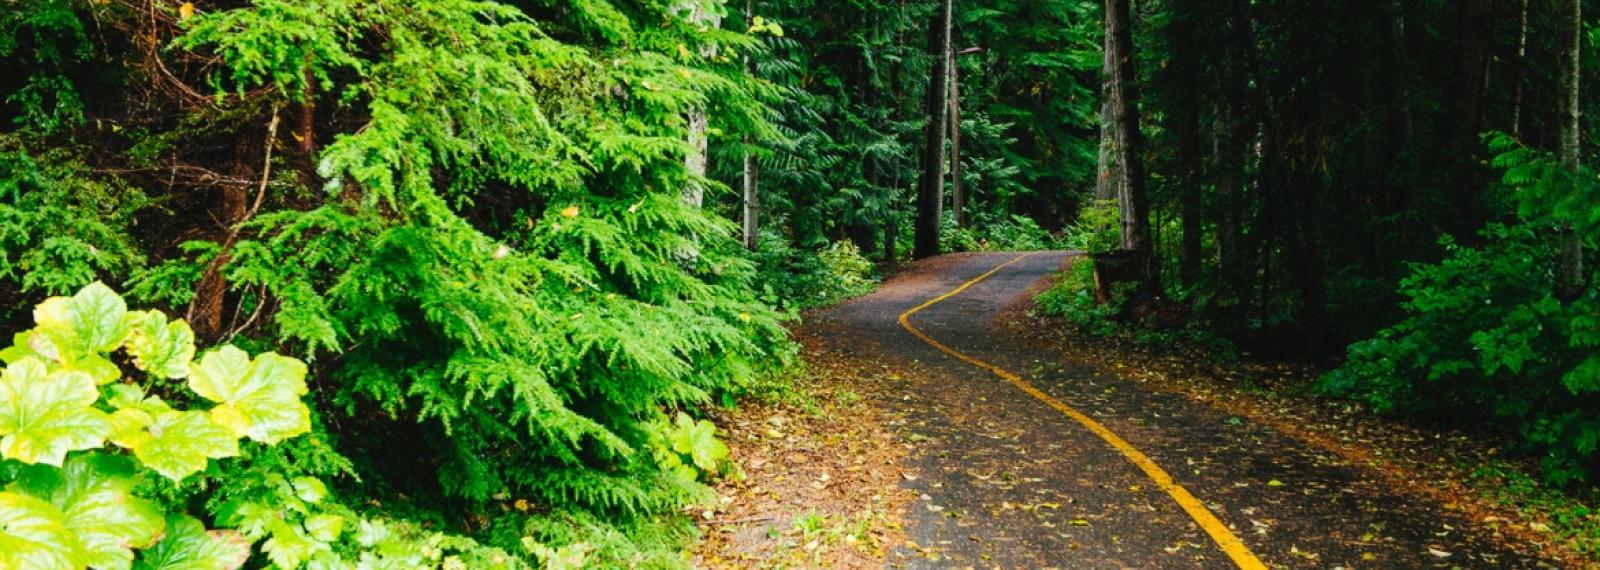 A bike path through the woods